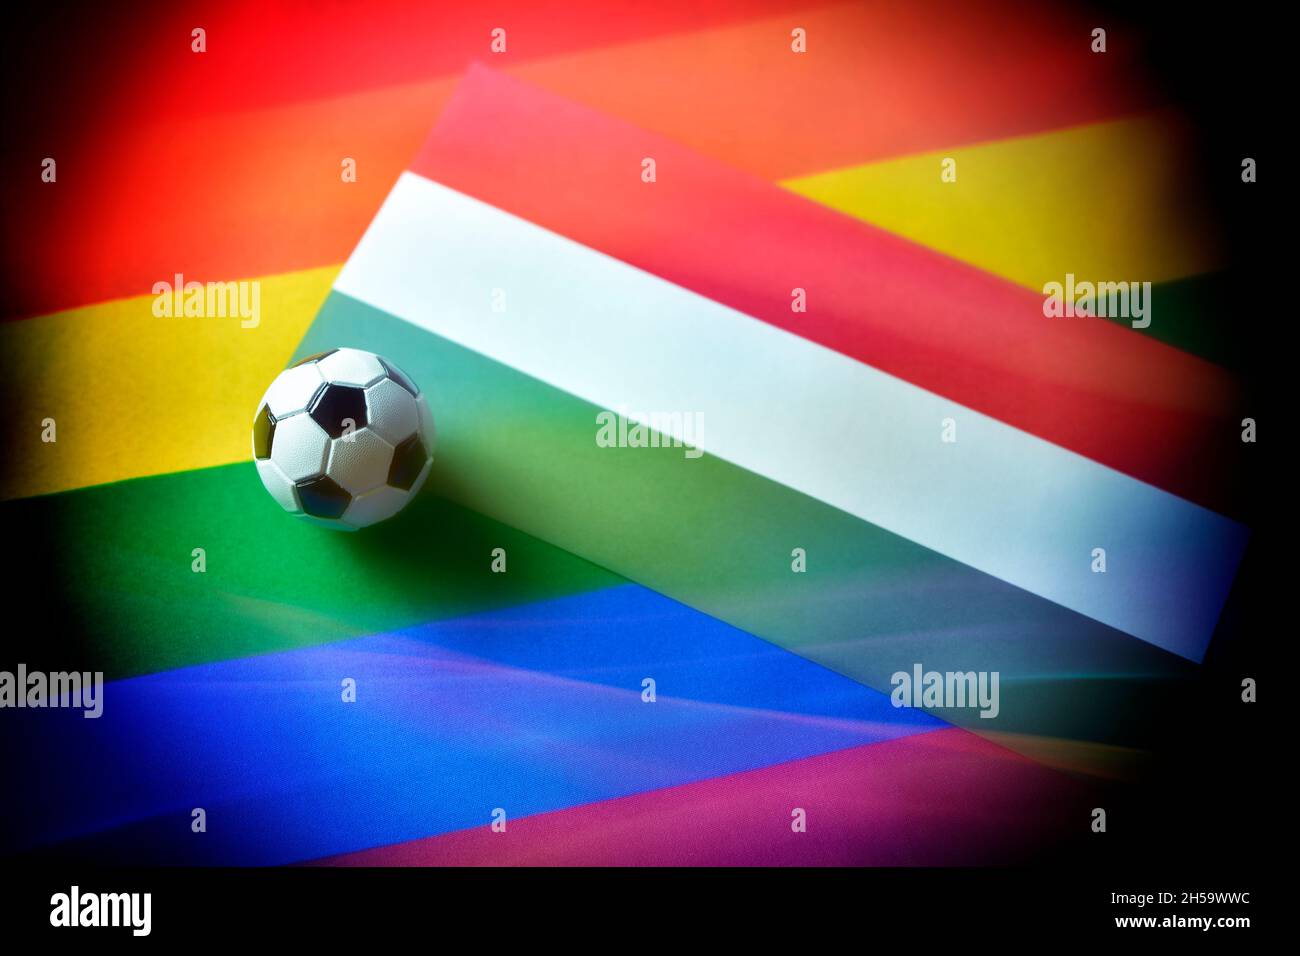 Miniaturfußball auf Fahne von Ungarn und Regenbogenfahne Stock Photo